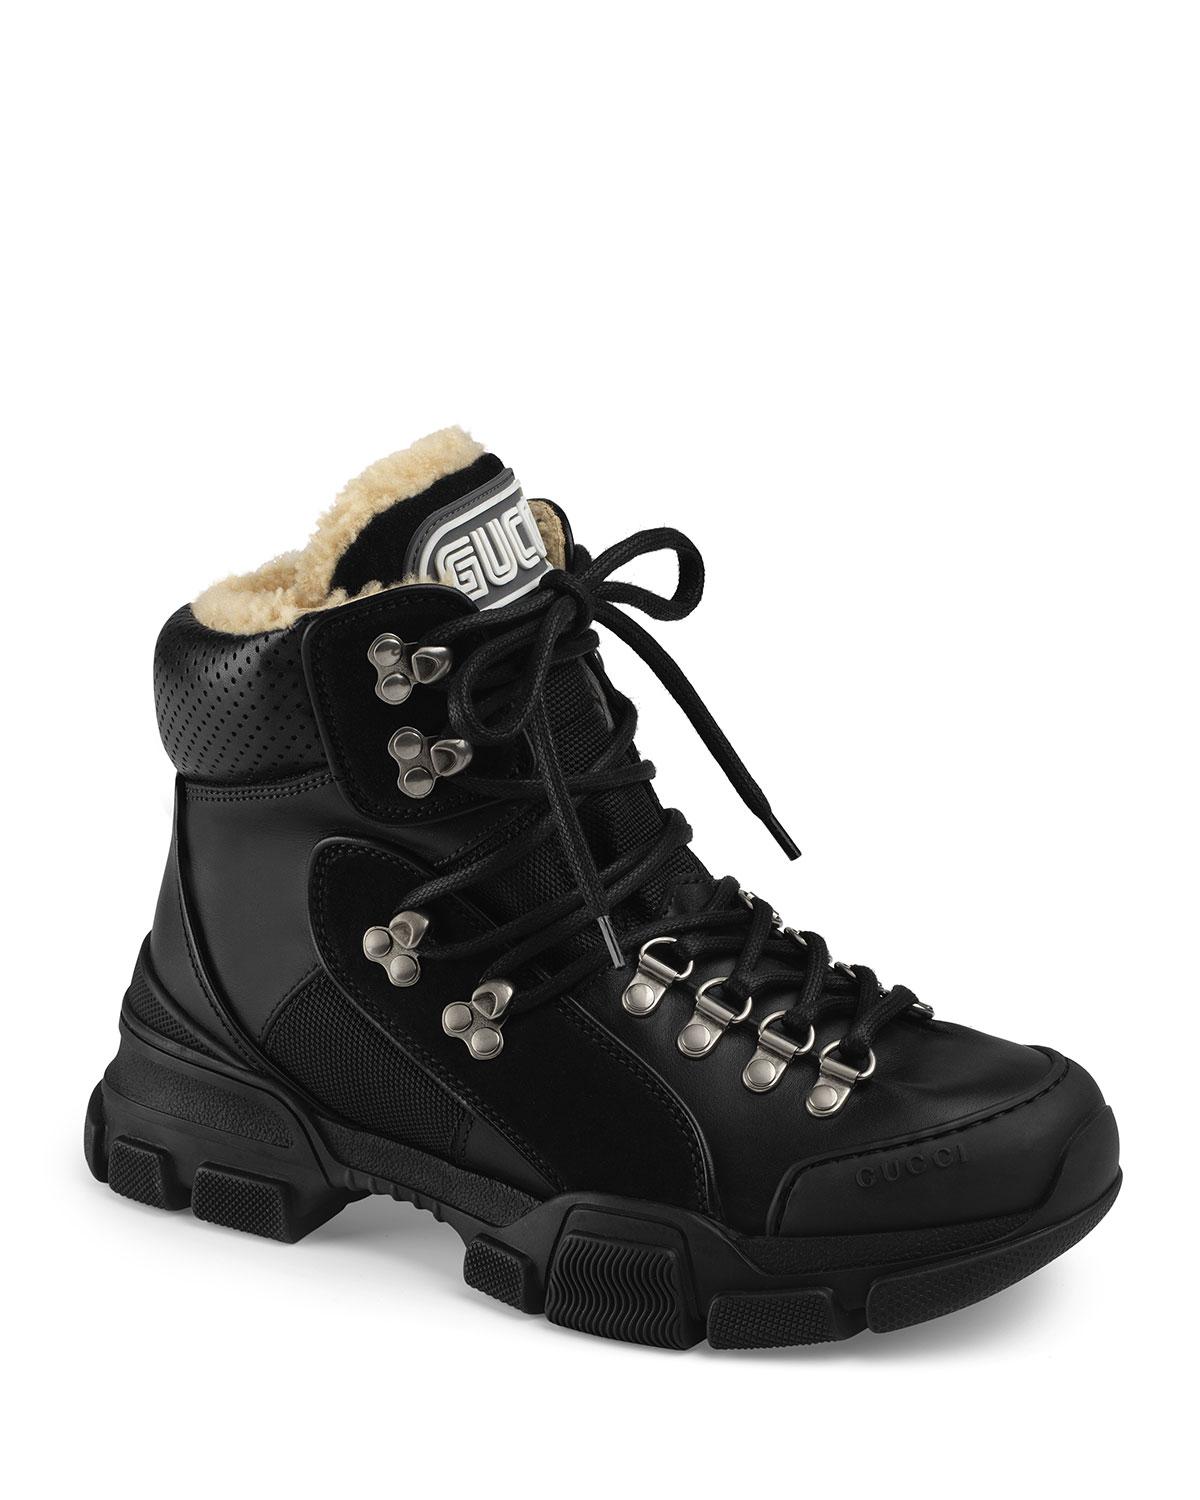 flashtrek boots